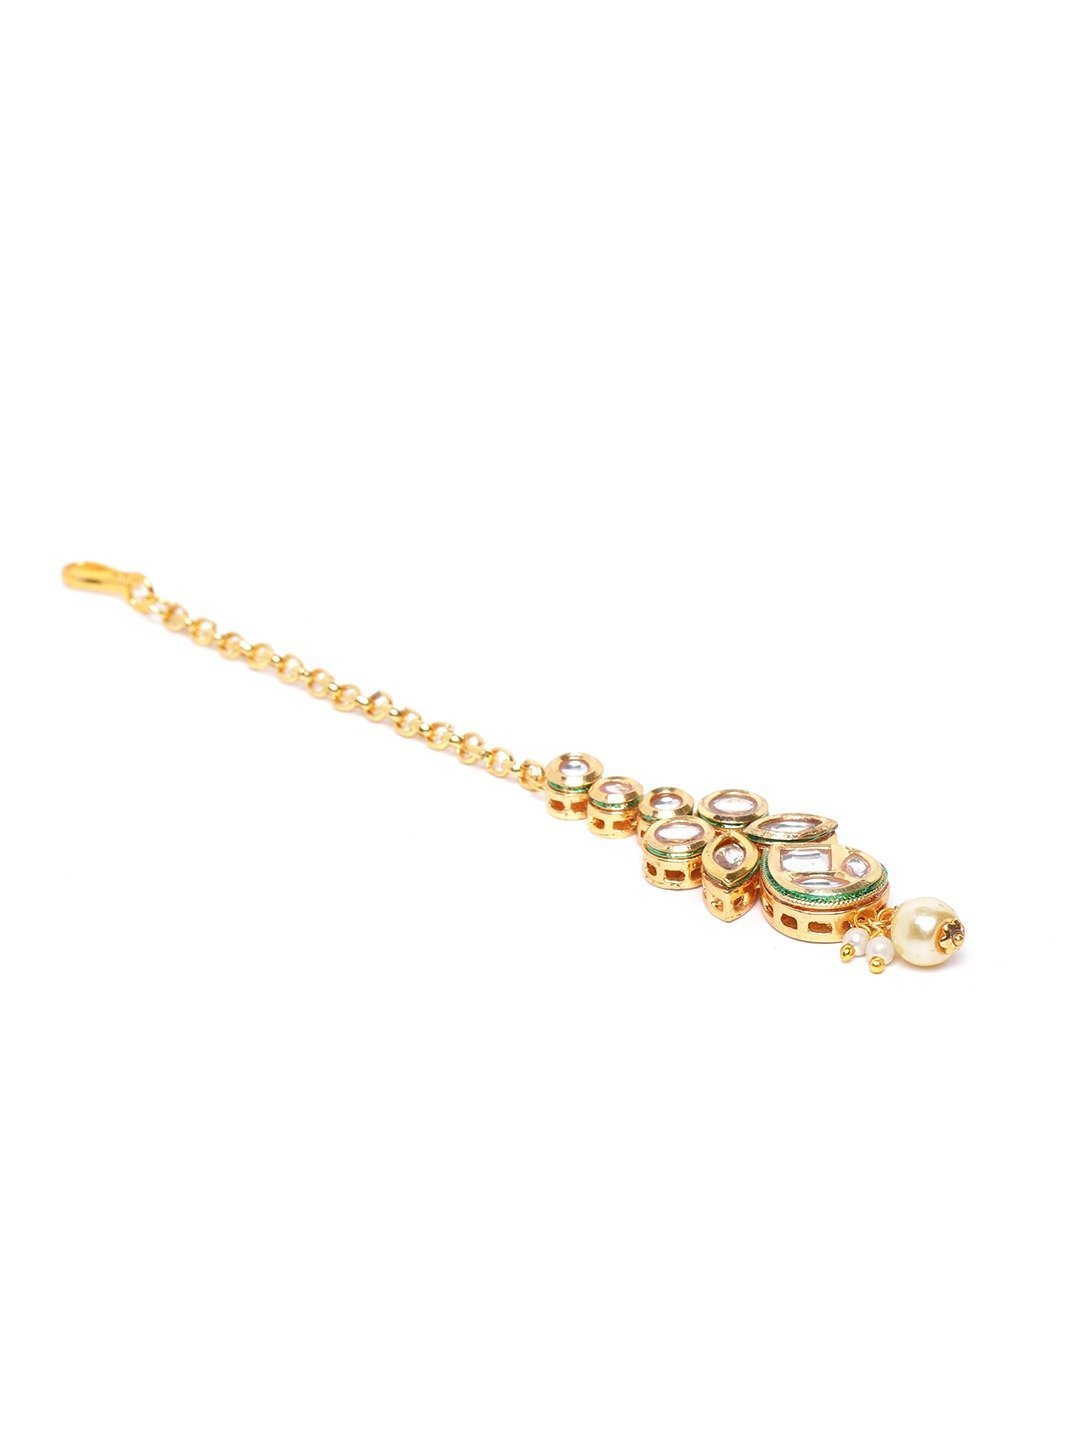 Women's Kundan Pearls Leaf Jewellery Set - Priyaasi